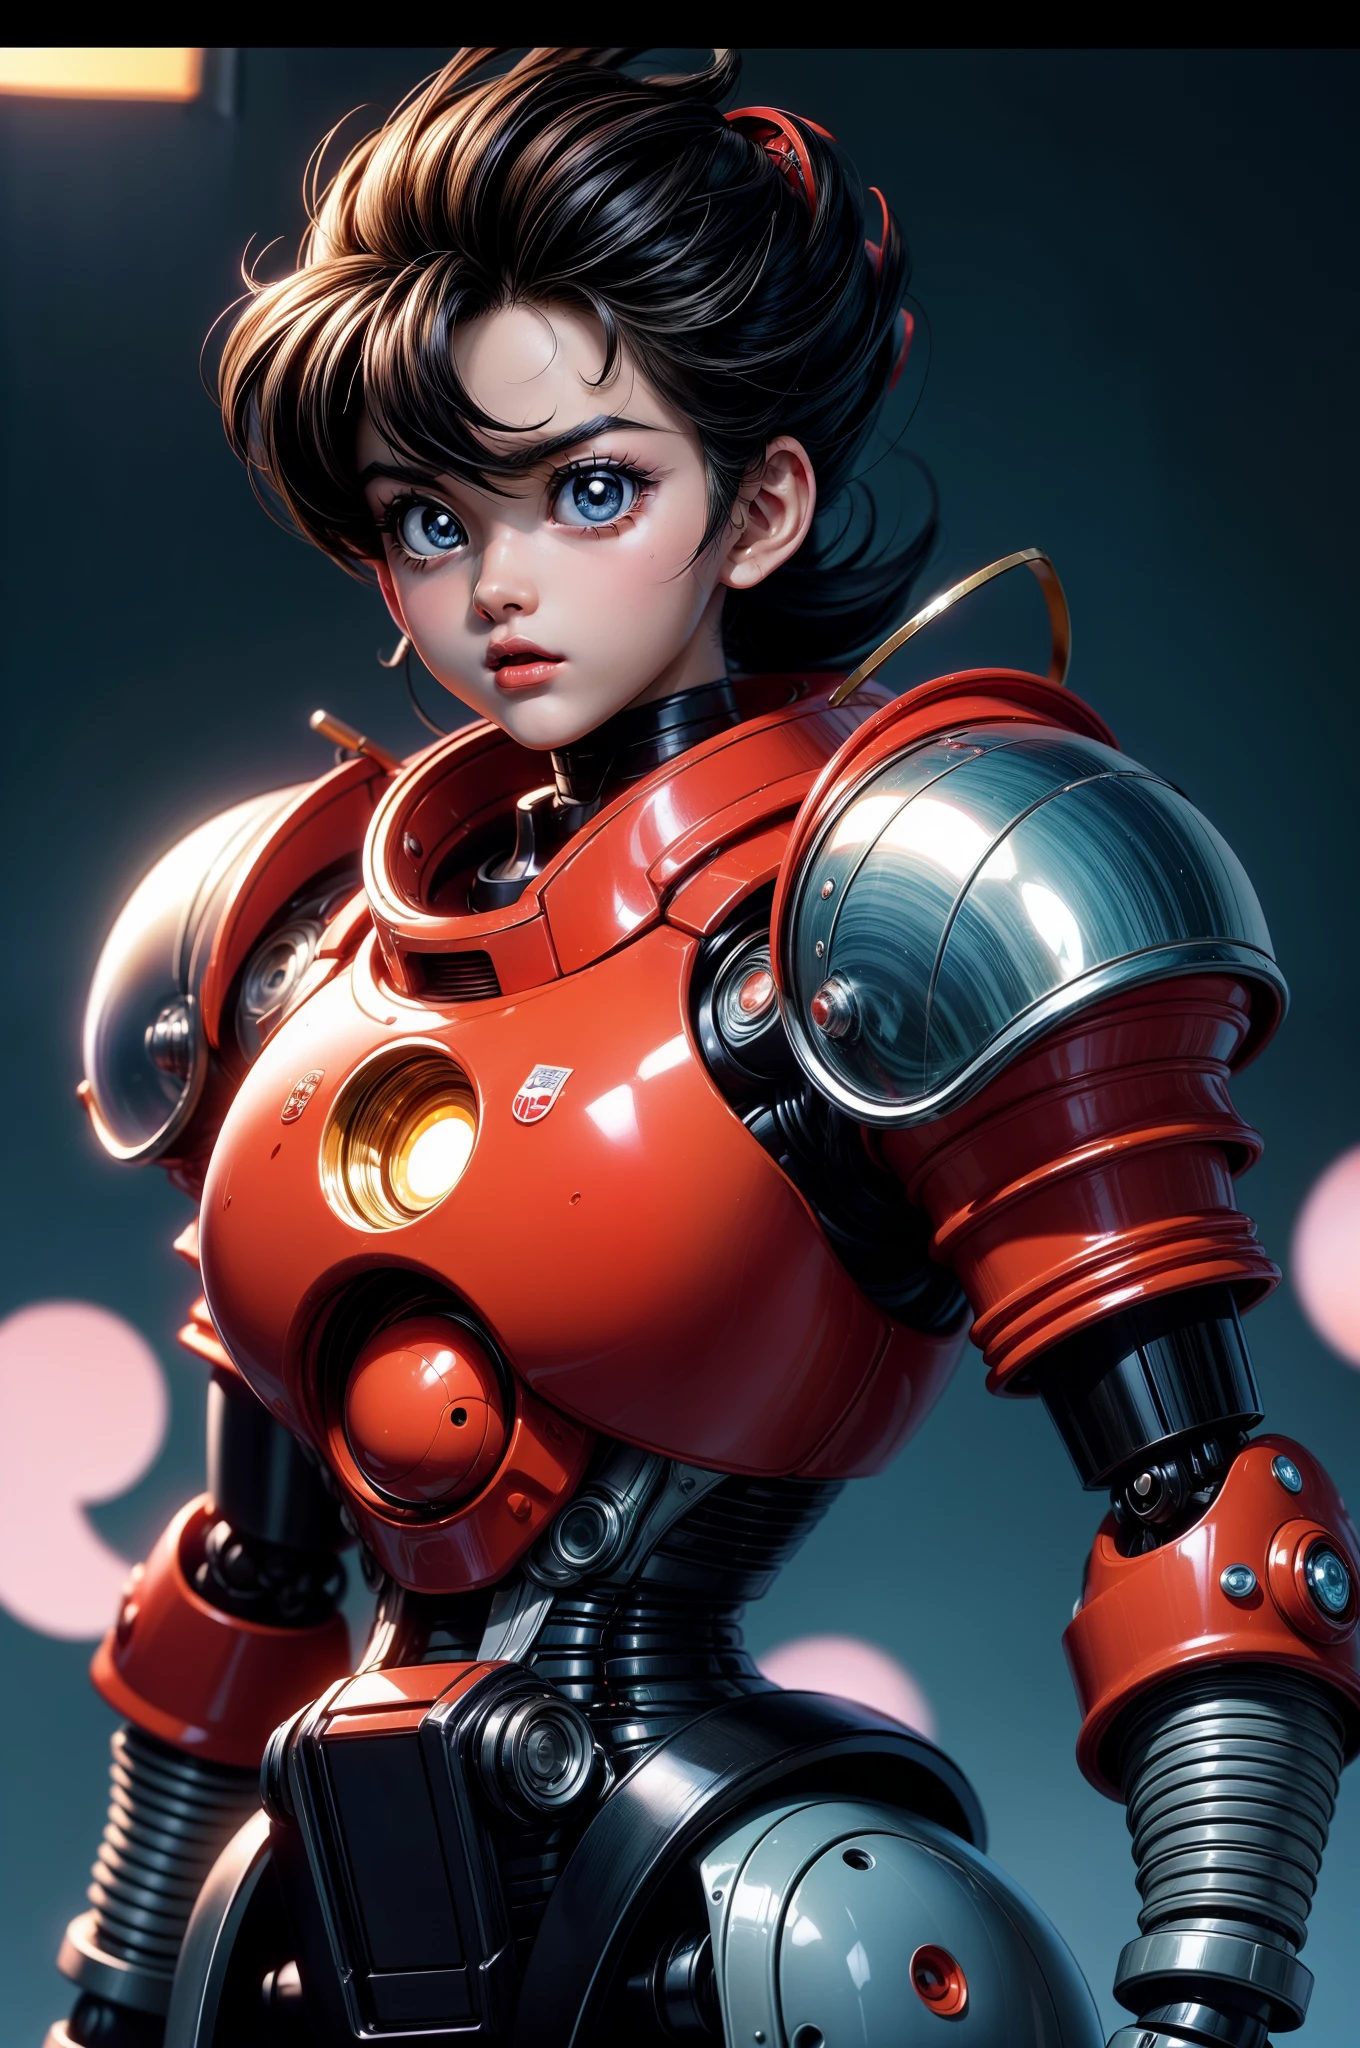 Vintage-Anime-Screenshot von Akira, Anime der 90er aesthetic. Ein süßer, hilfsbereiter Roboter aus schillerndem Metall. Anime der 90er.